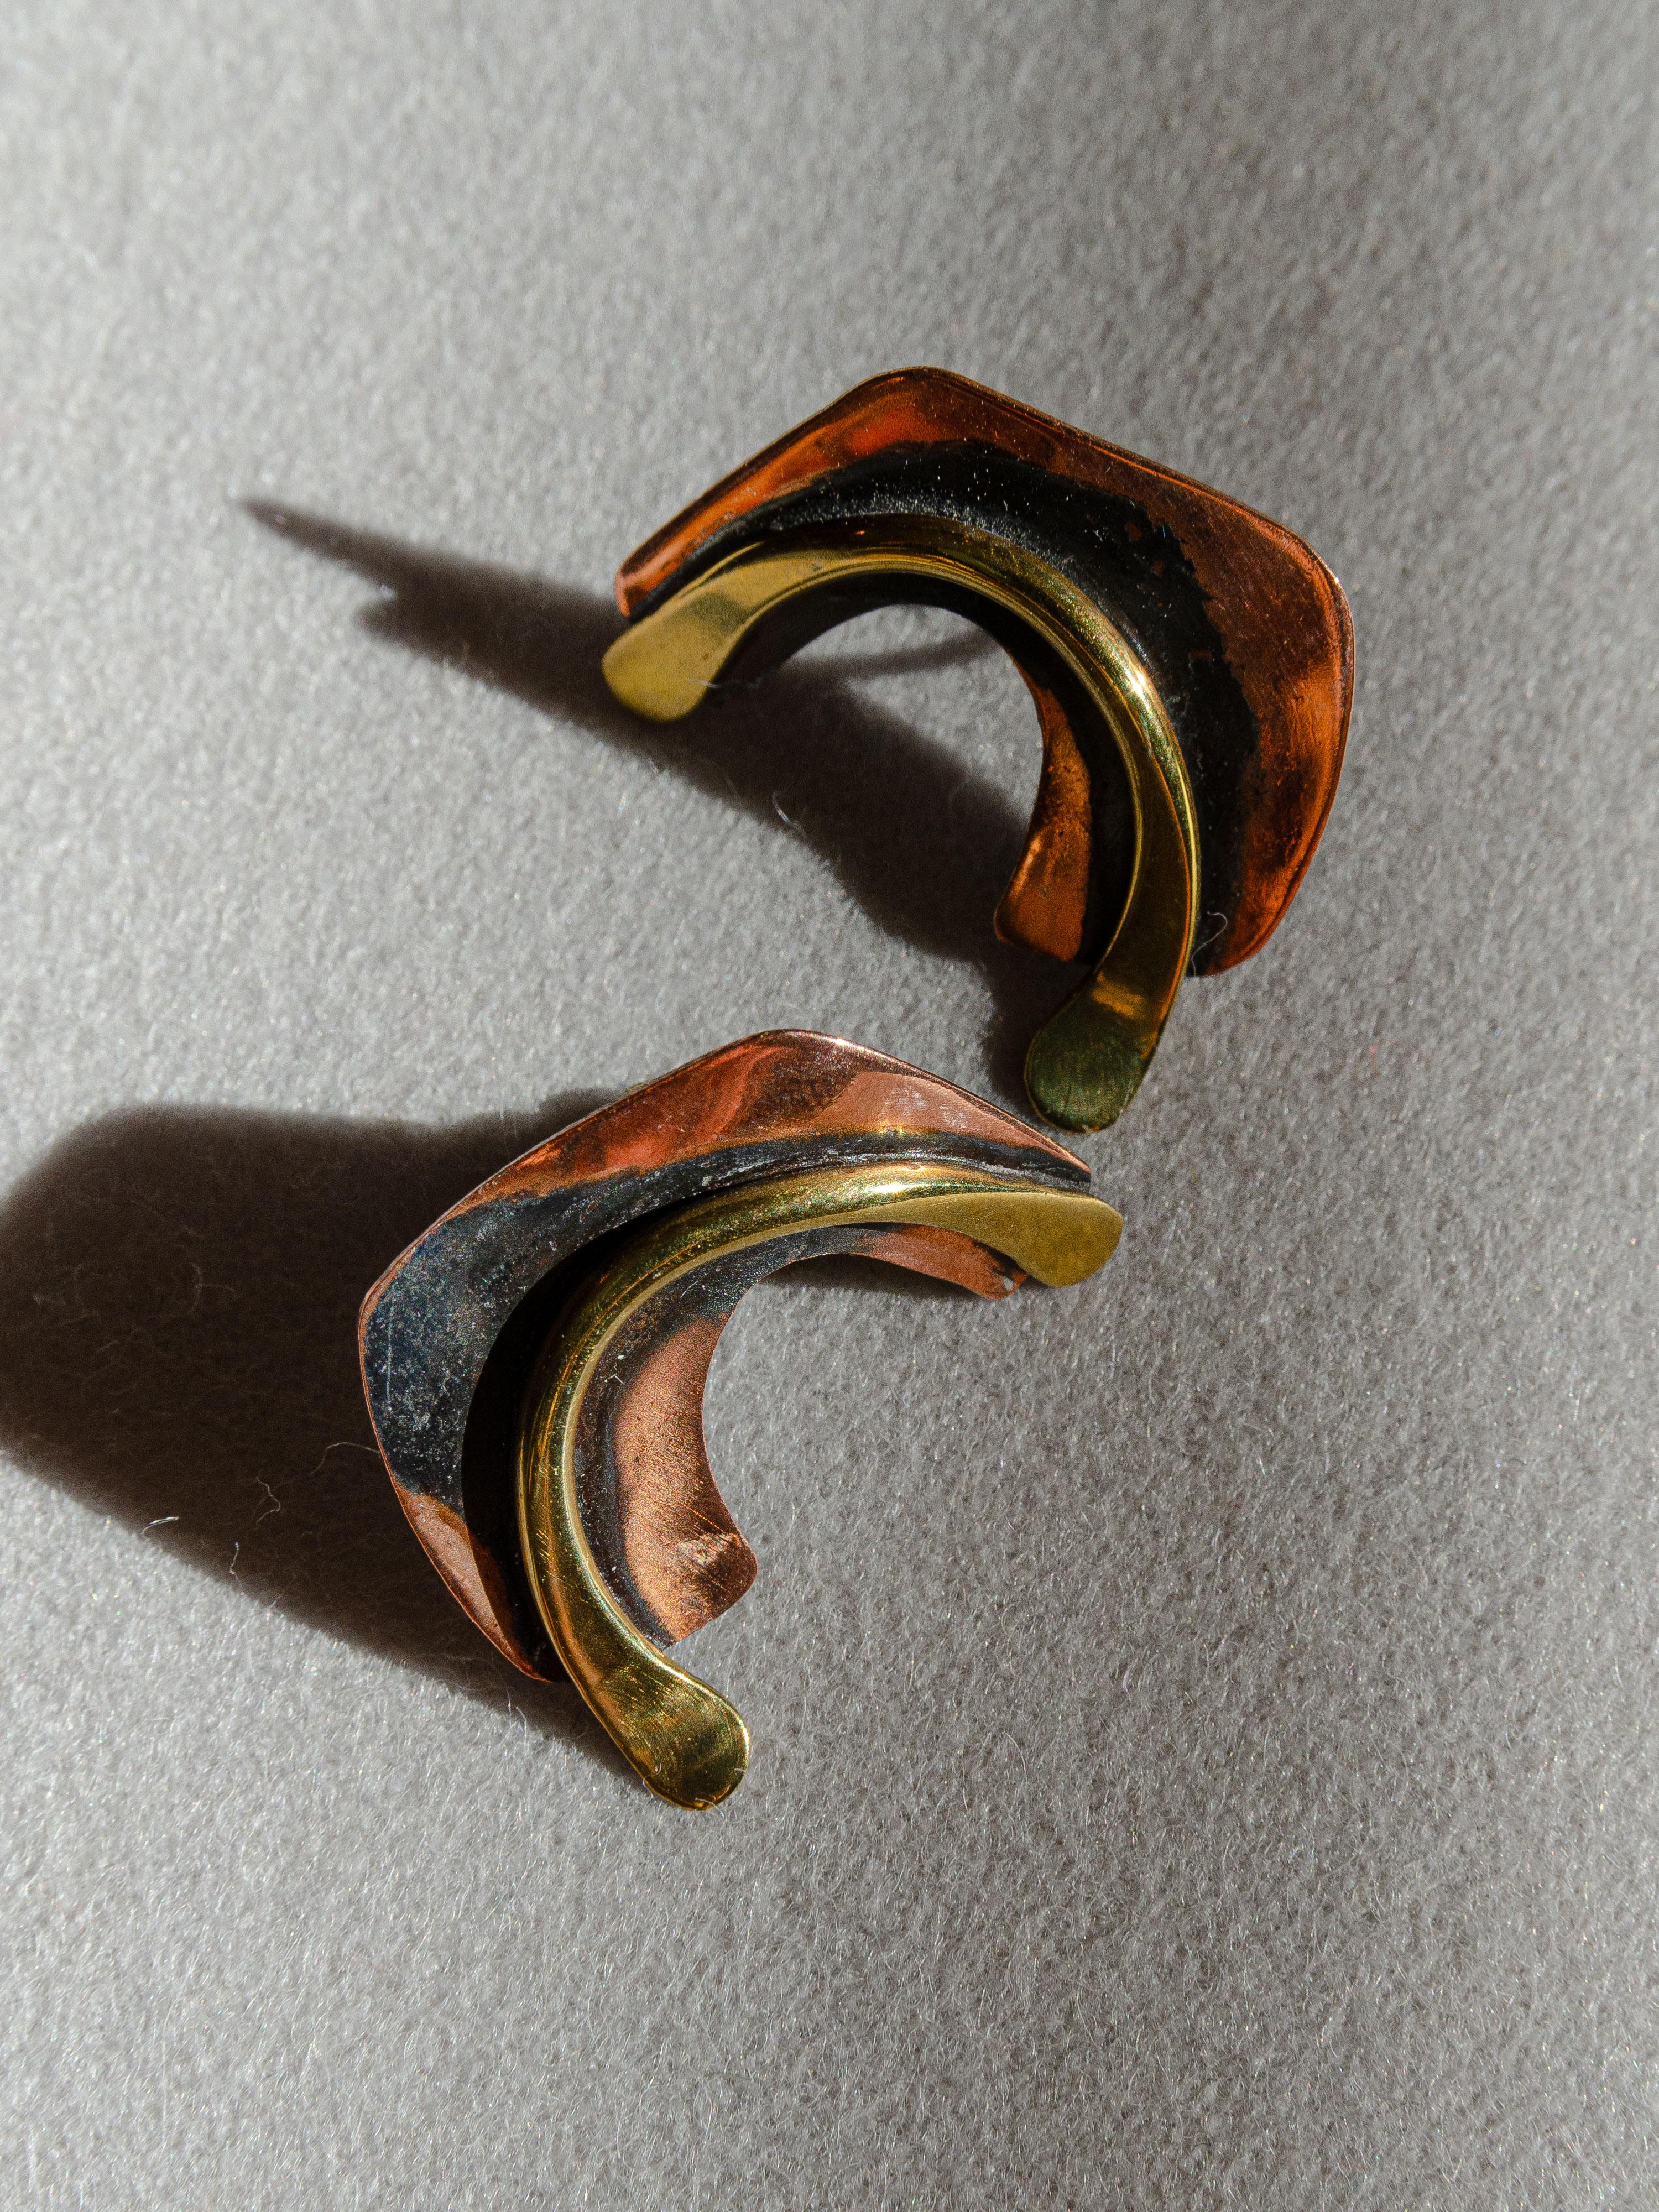 Un grazioso paio di orecchini biomorfi in rame e ottone disegnati da Art Smith, gioielliere modernista del Greenwich Village, negli anni Cinquanta. Smith è considerato un maestro della gioielleria durante il movimento modernista della metà del XX